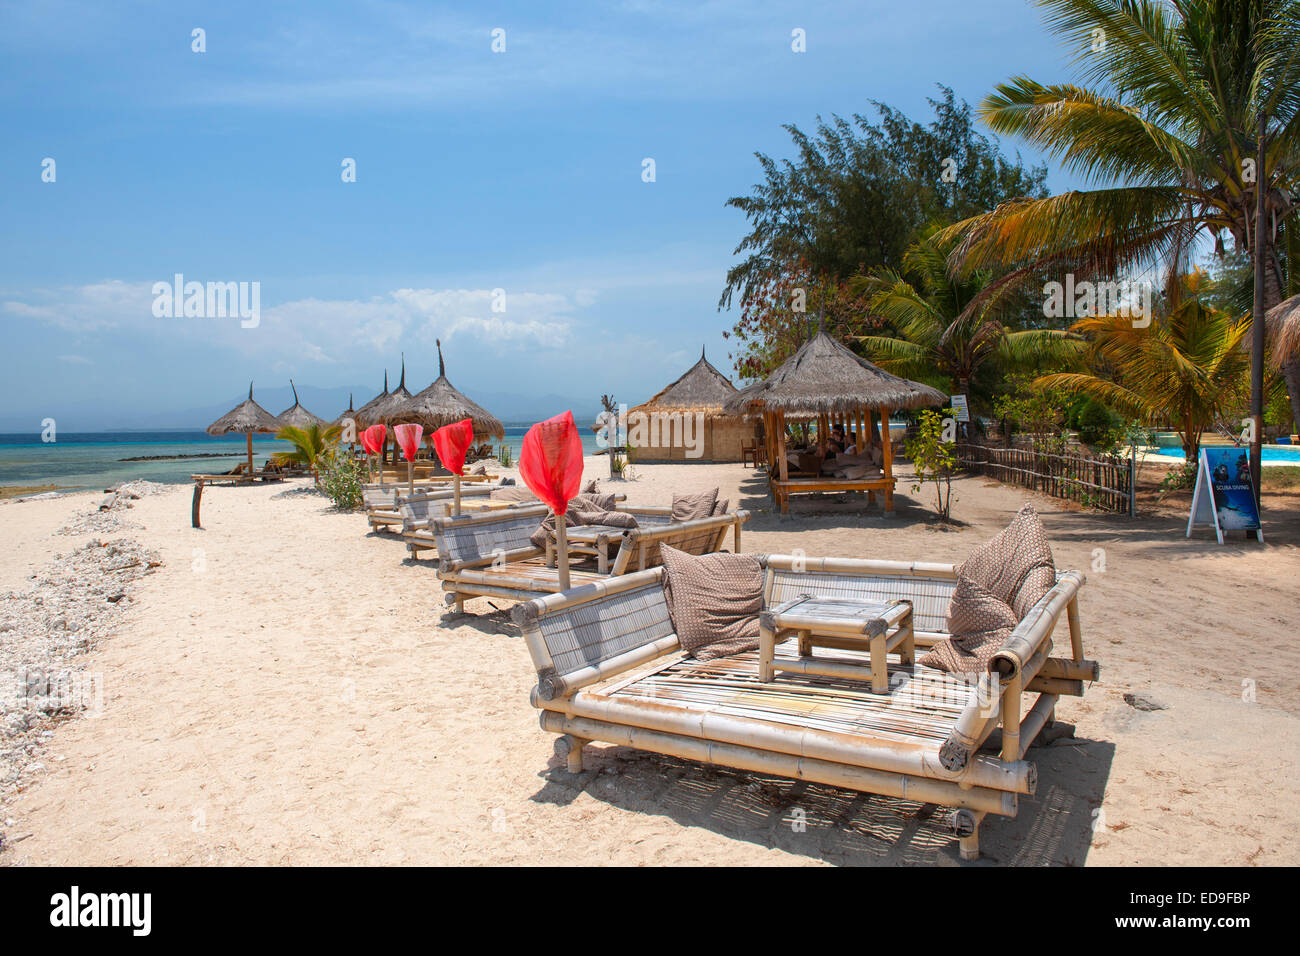 Tumbonas de playa en la isla de Gili Air, Indonesia. Foto de stock